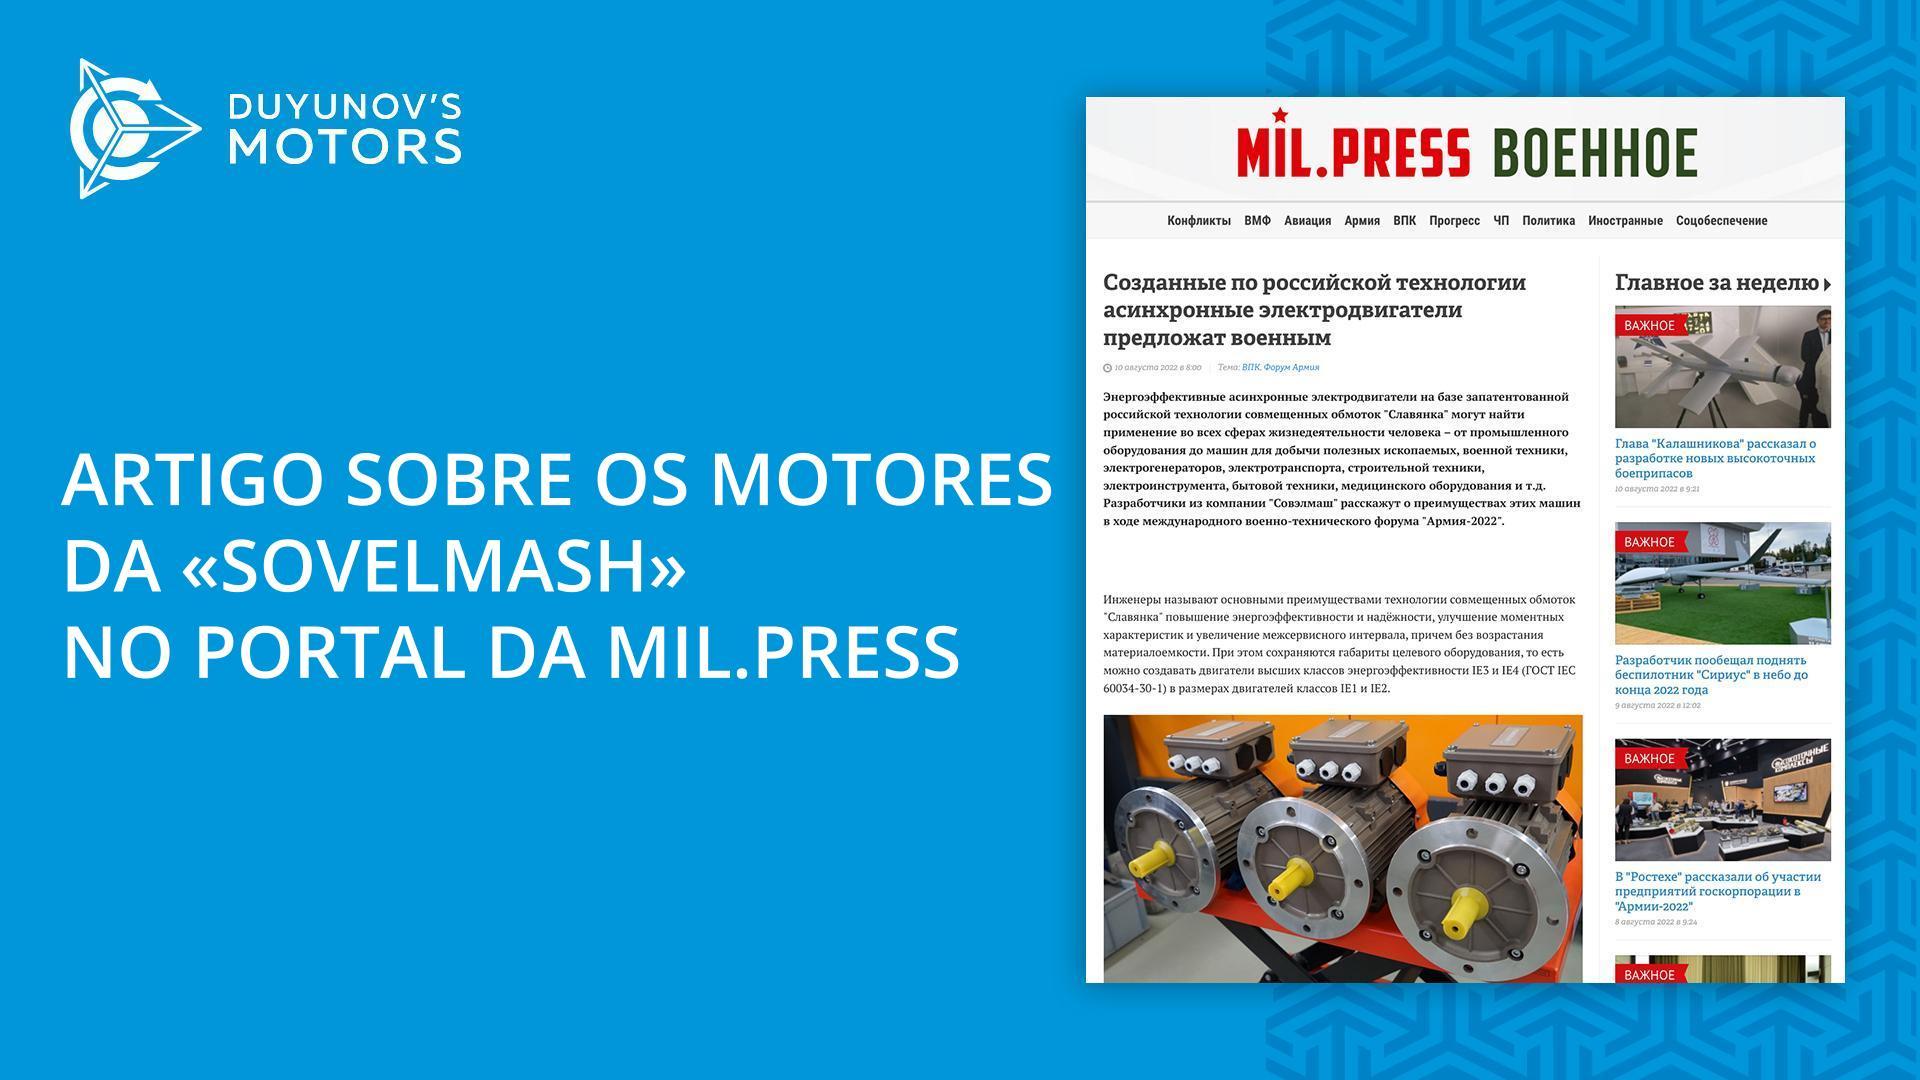 Novo artigo sobre os motores da "Sovelmash" publicado pela agência de notícias Mil.Press Military